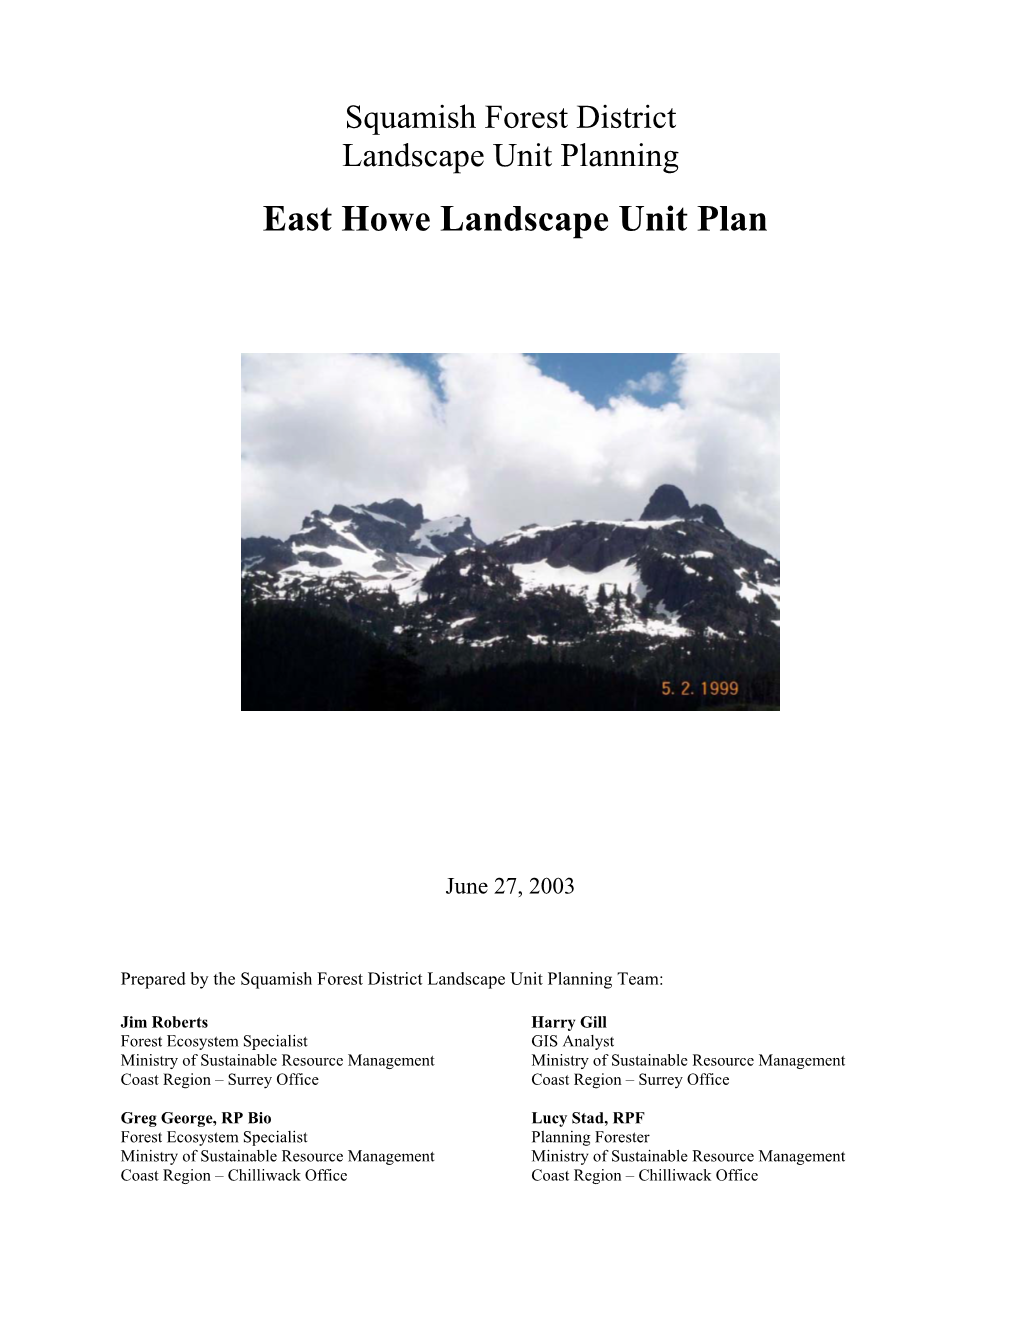 East Howe Landscape Unit Plan